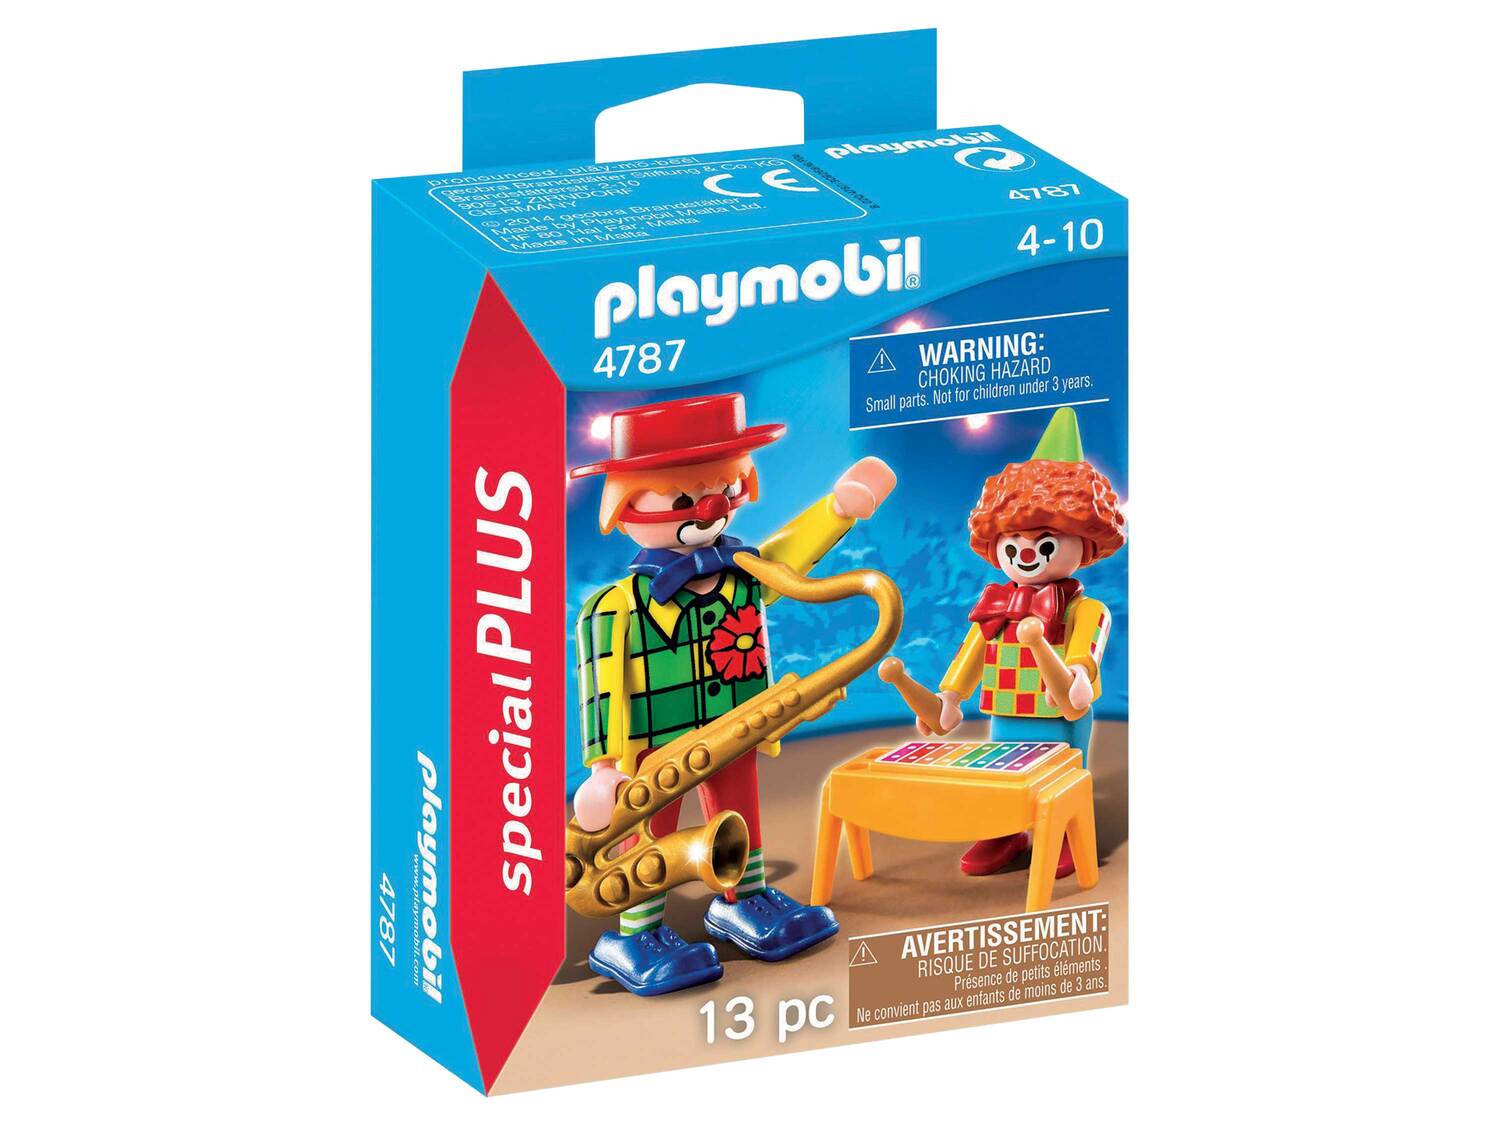 Figurines Playmobil Special Plus , le prix 2.89 € 
- Au choix : 11 pièces, ou ...